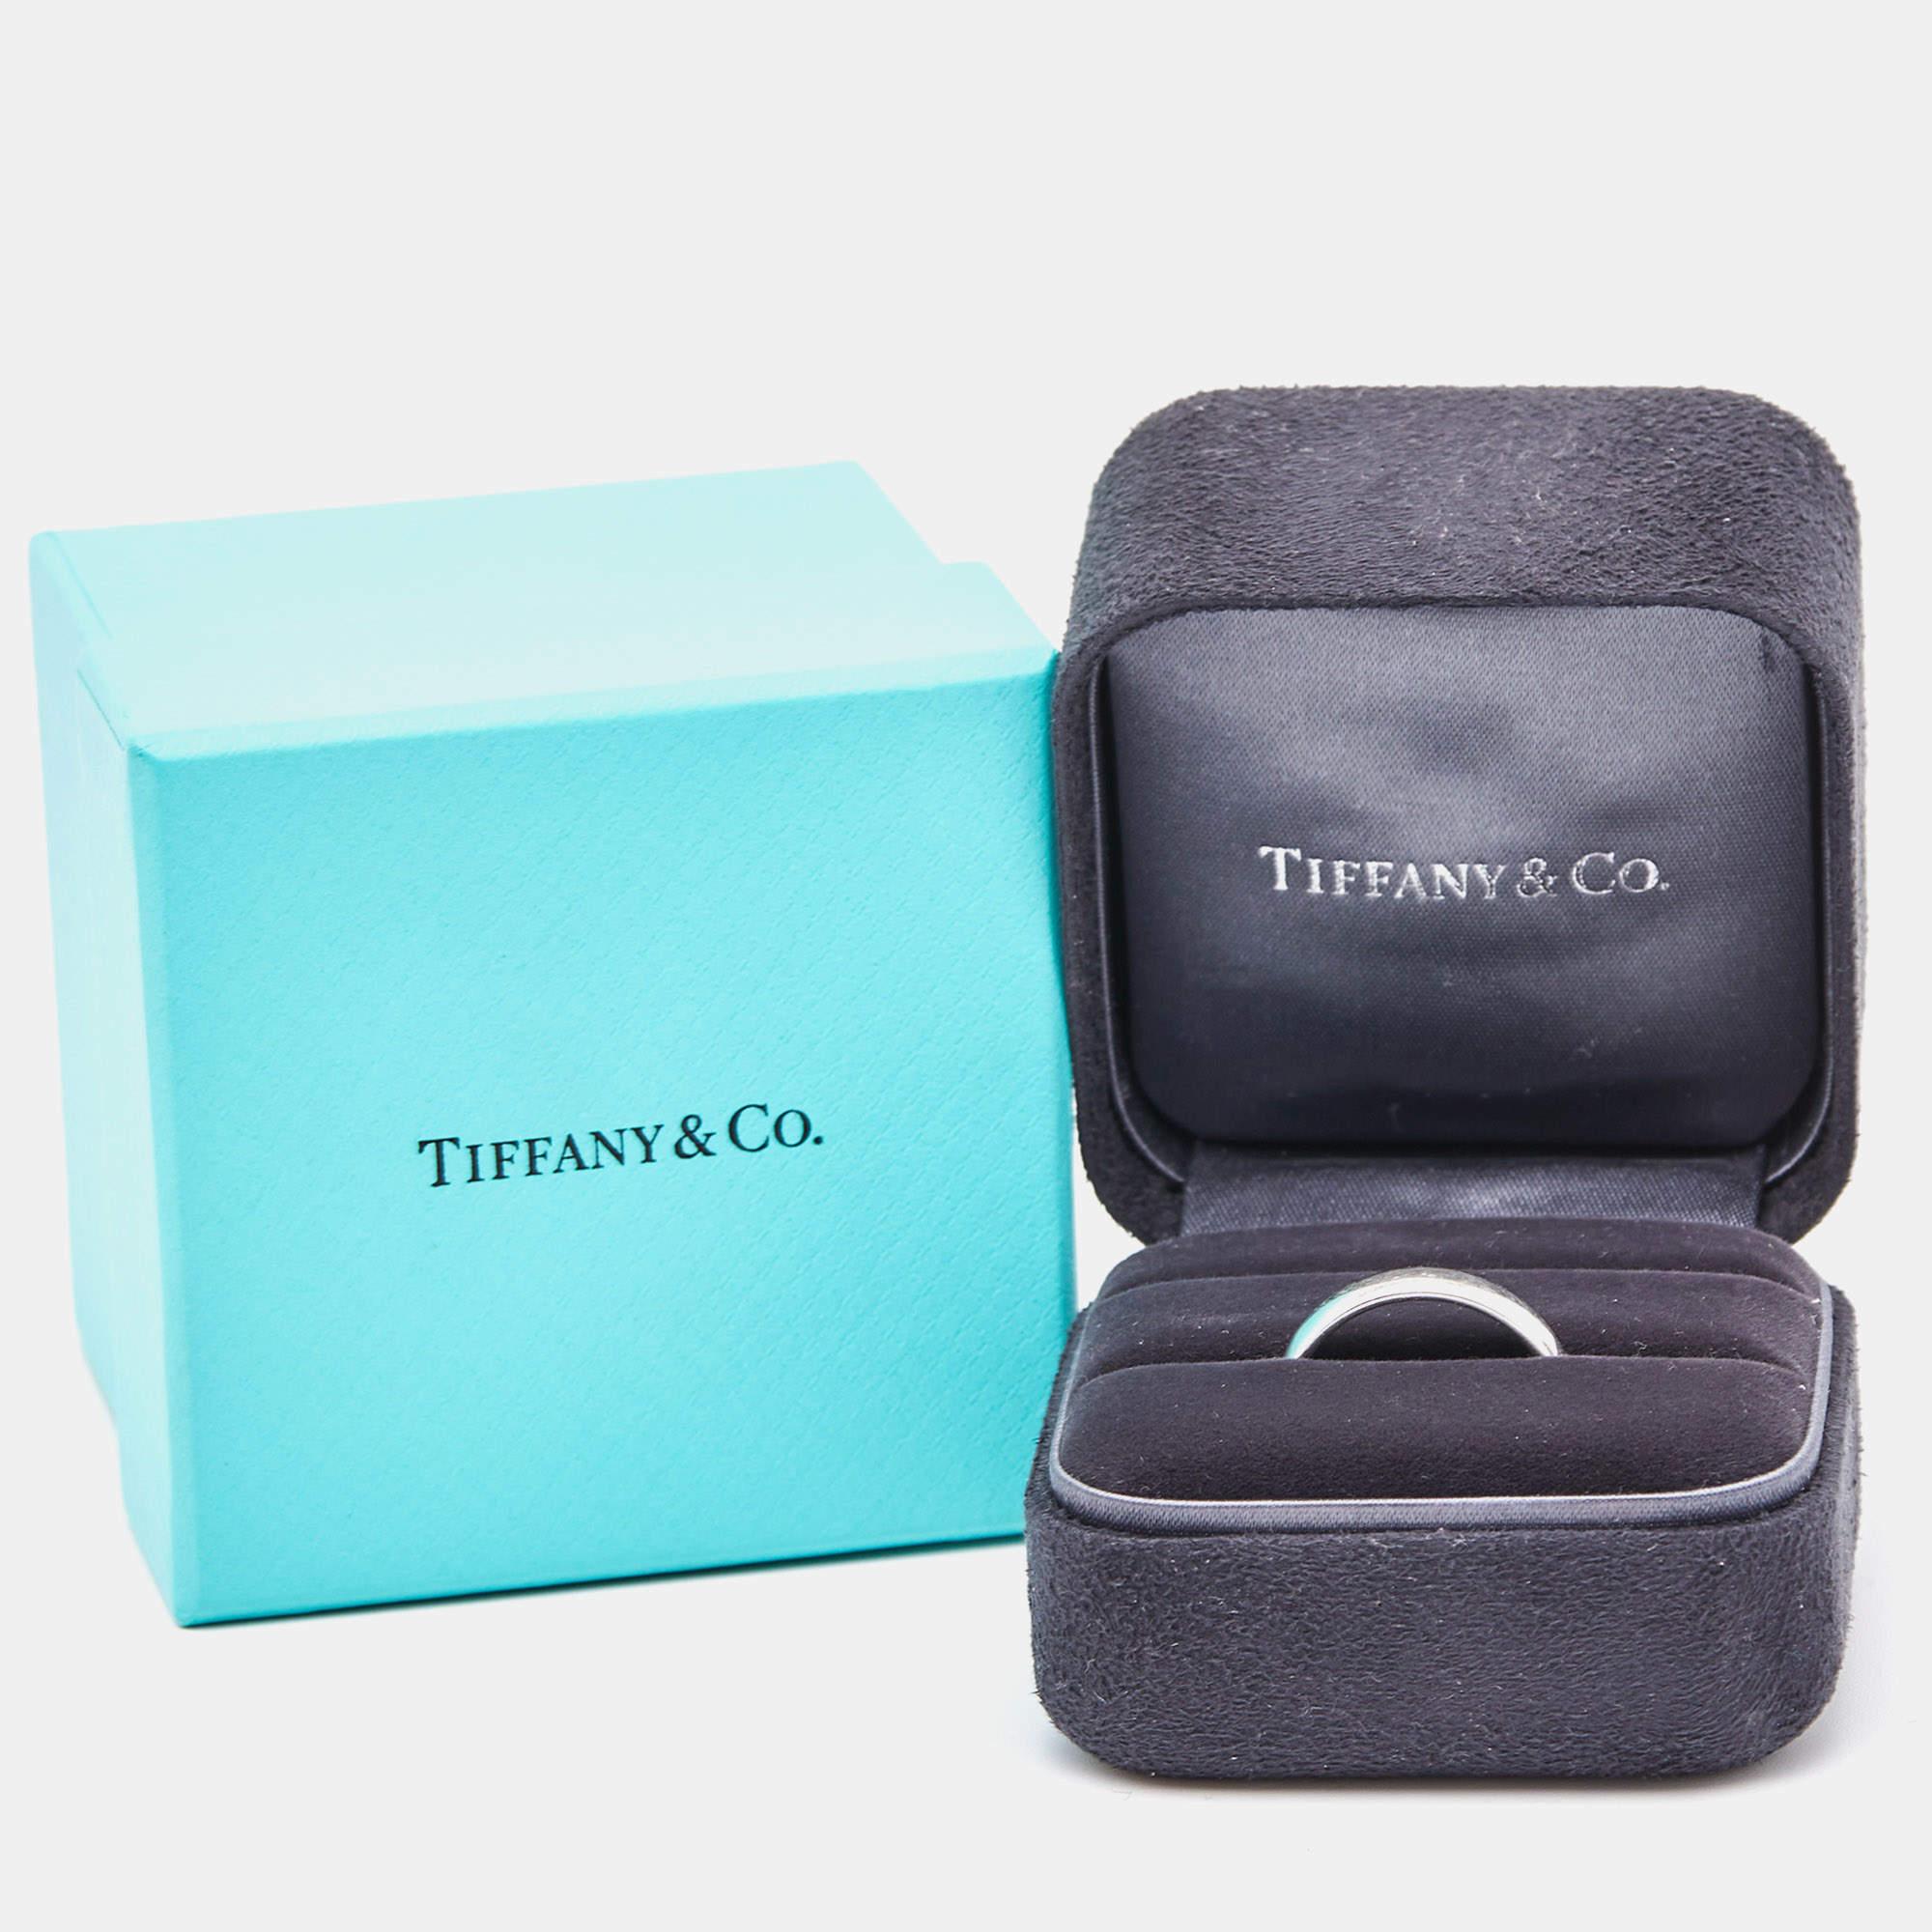 Tiffany & Co. Forever Platinum Wedding Band Ring Size 6 3